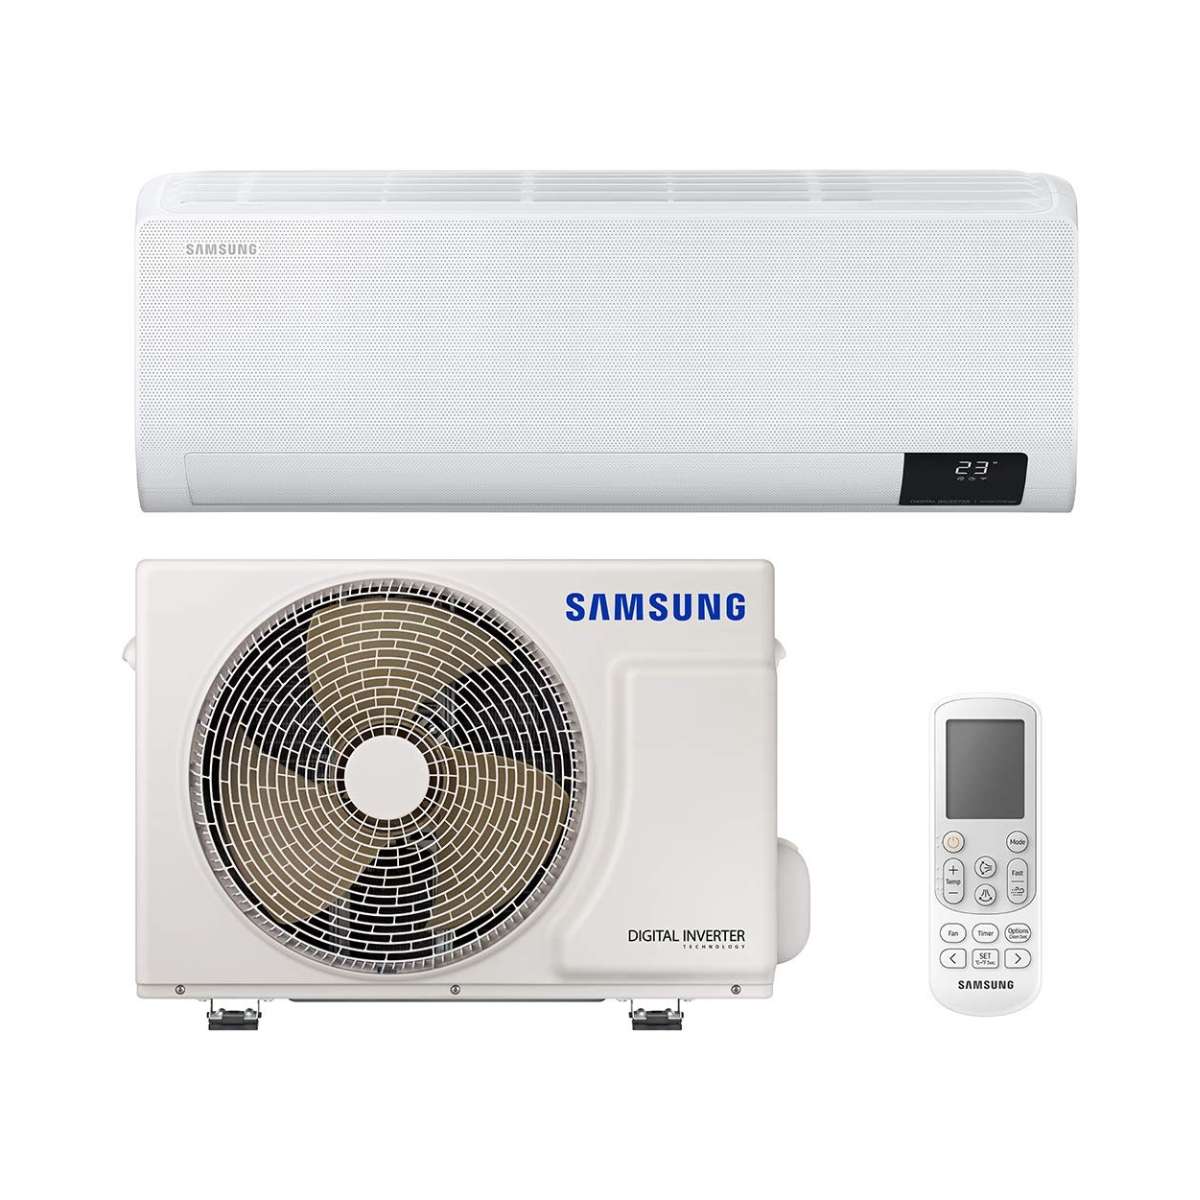 Split klimaanlage Samsung Wind Free Comfort F-AR12NXT 3,5kW 12000 BTU mit der Referenz F-AR12NXT von der Marke SAMSUNG